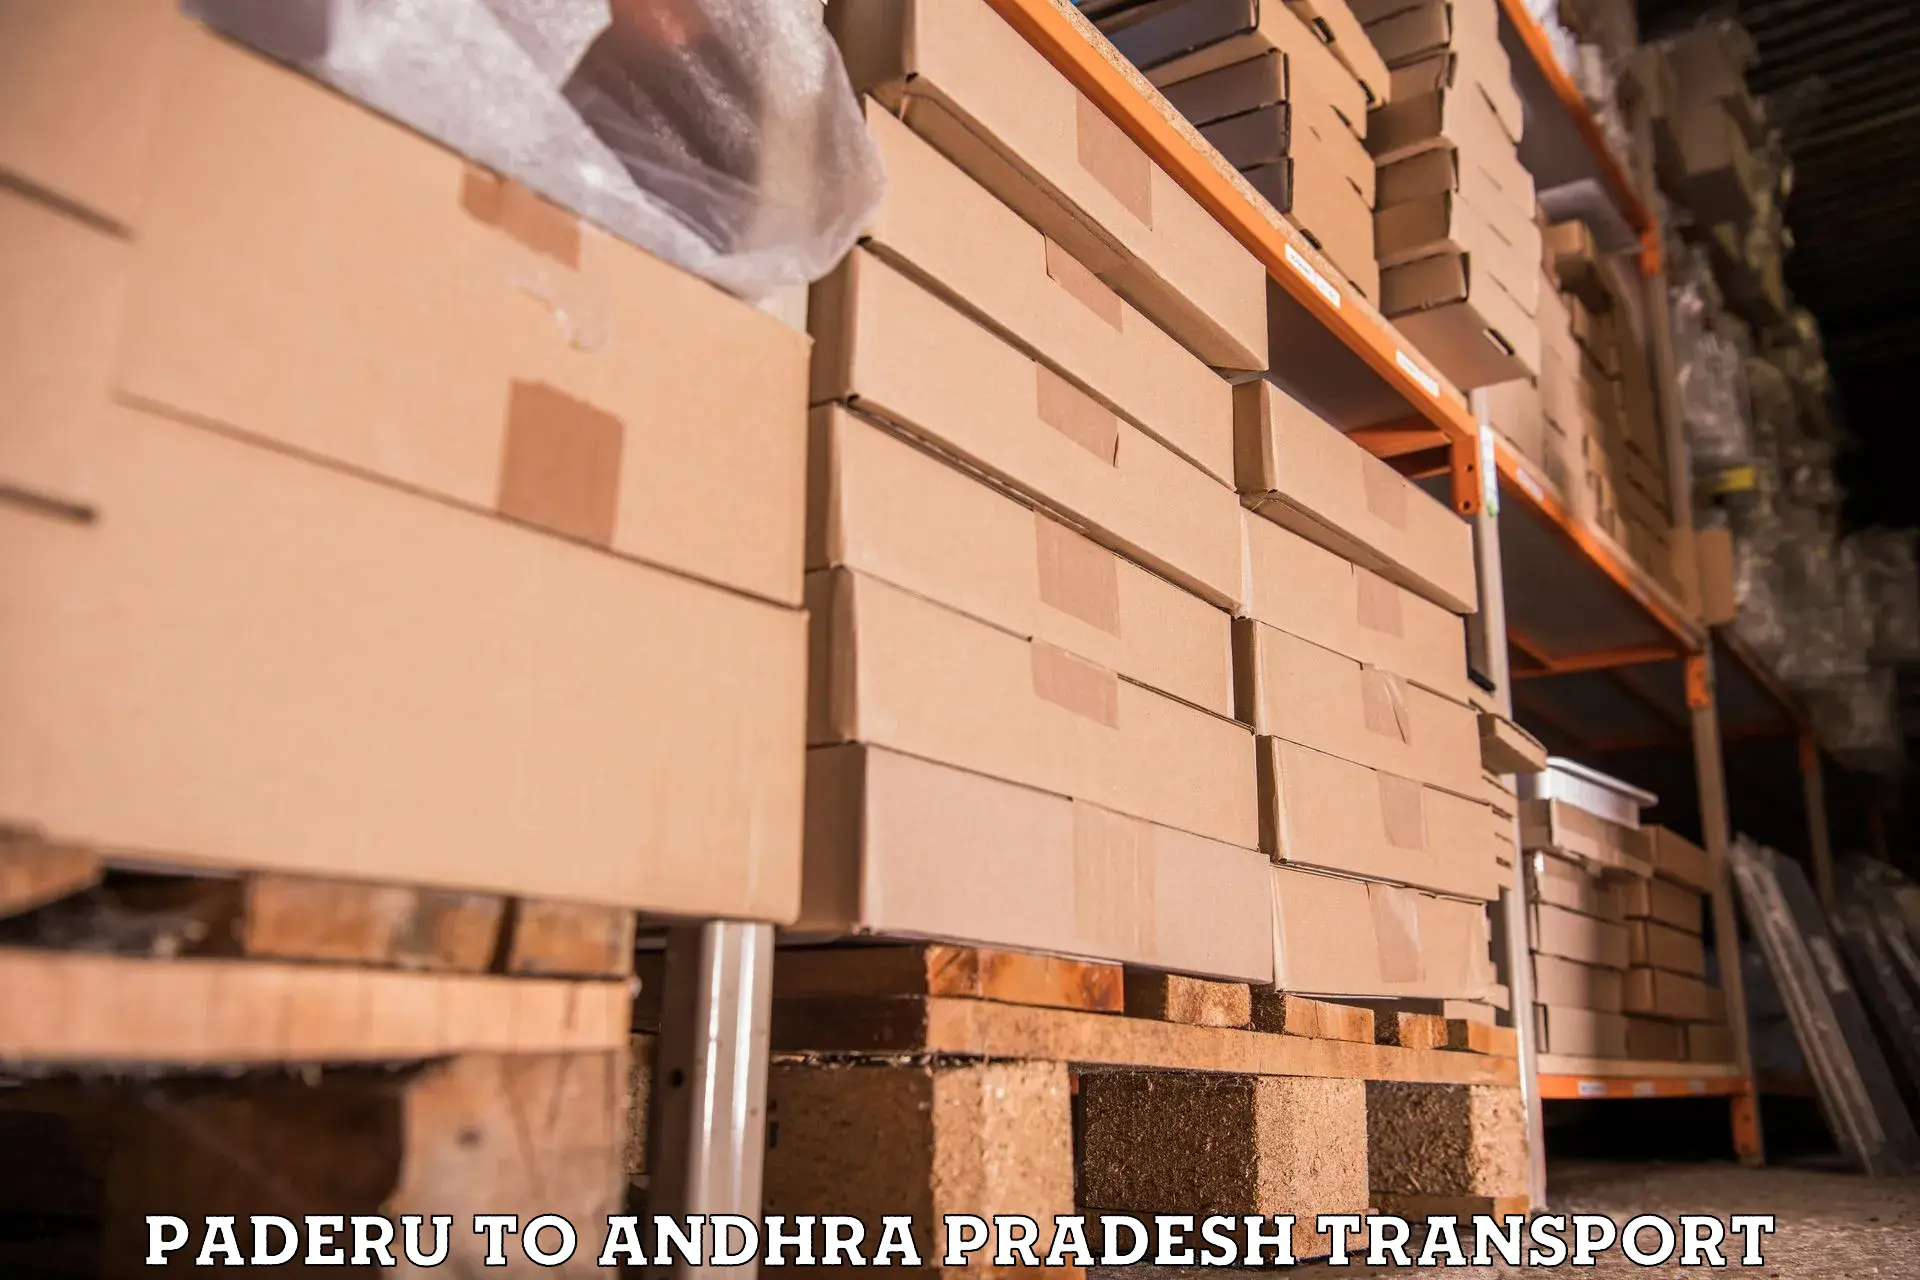 Furniture transport service Paderu to Narsipatnam